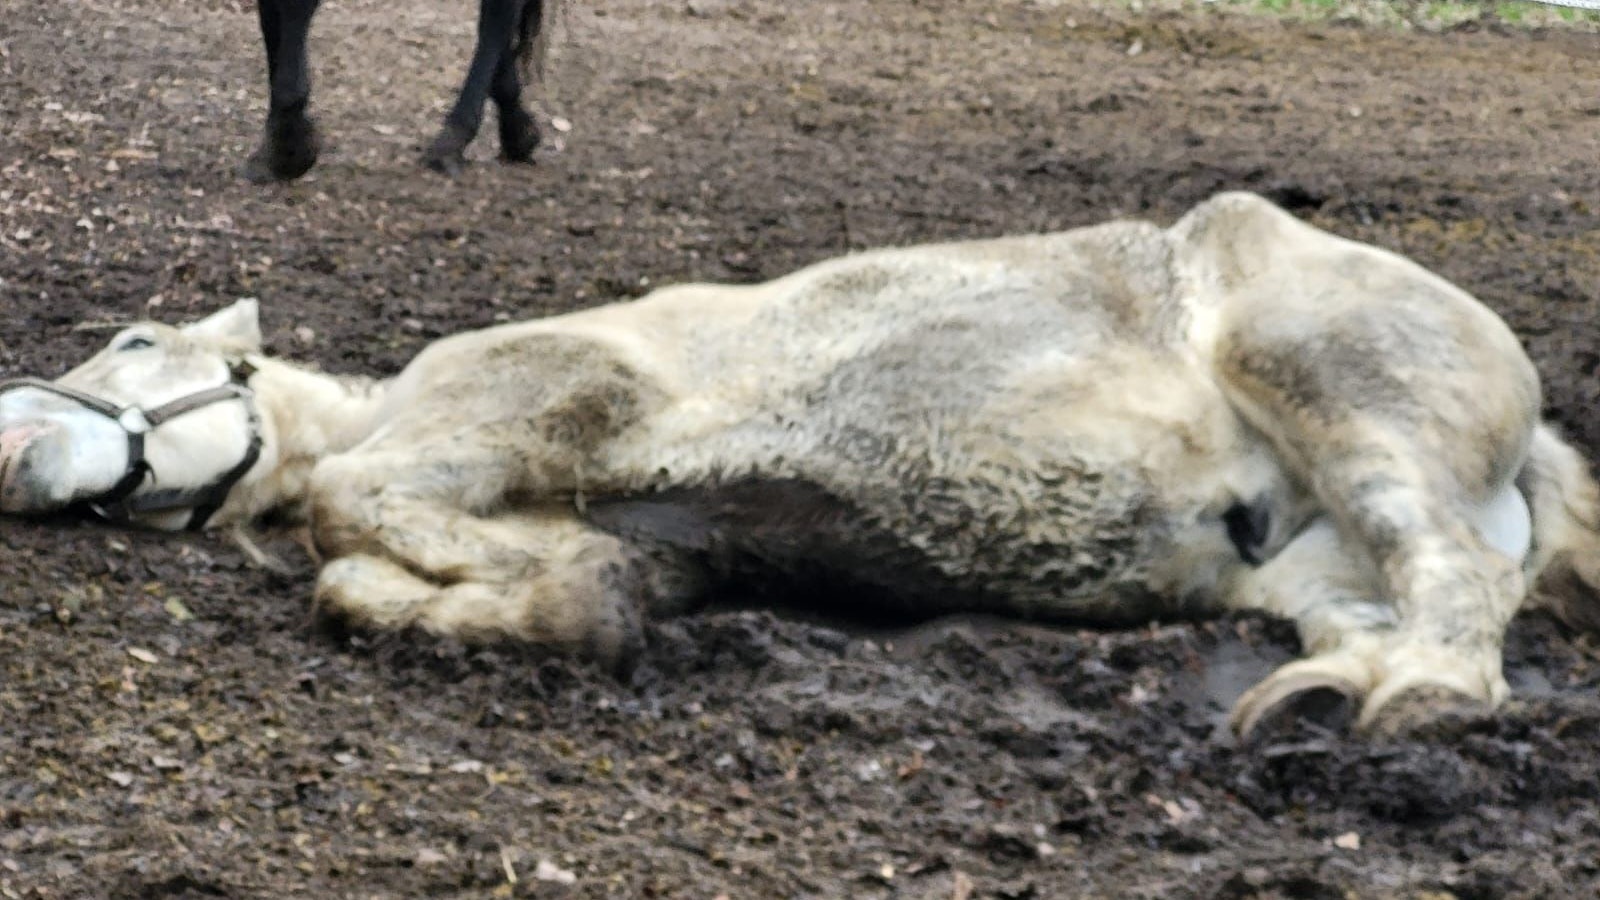 Erschöpft am Boden: Das Pferd kann sich nicht mehr aus eigener Kraft auf den Beinen halten. Foto: privat